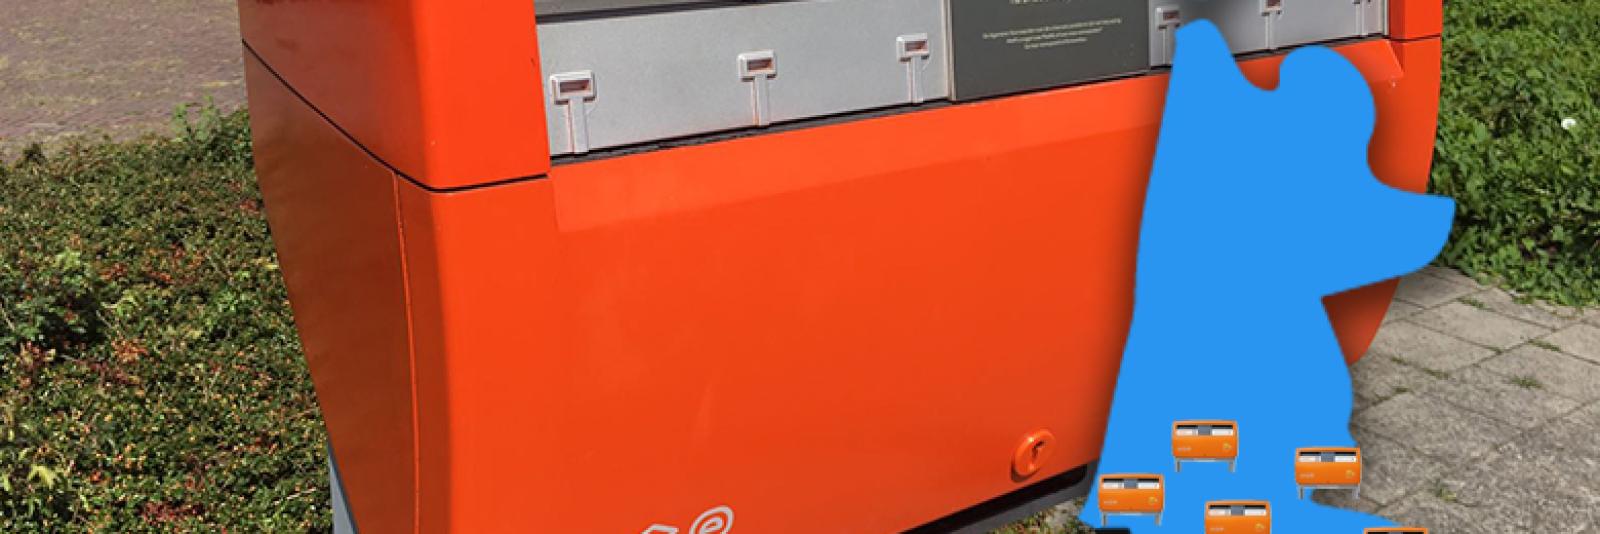 Hysterisch niemand maat Oranje brievenbus verdwijnt uit straatbeeld: hier kan je nog wel terecht -  NH Nieuws